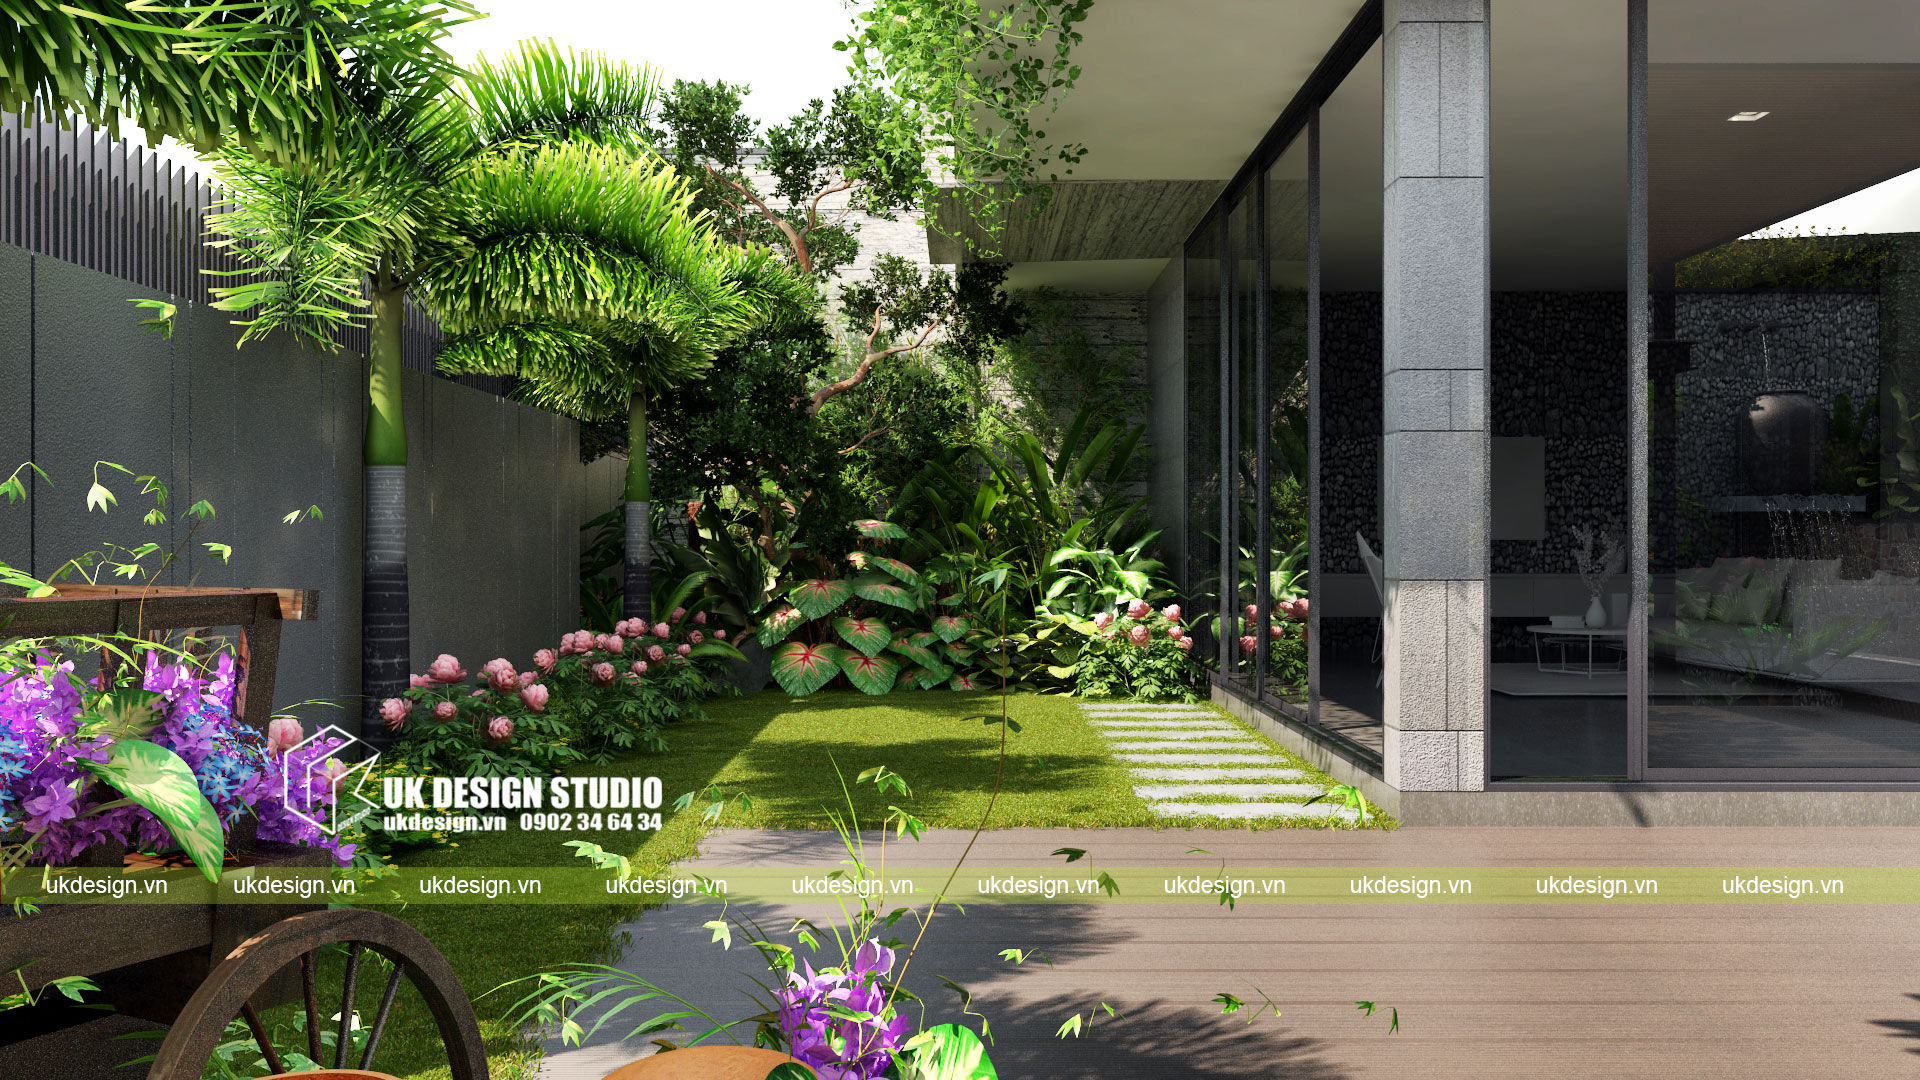 Biệt thự sân vườn UK DESIGN STUDIO - KIẾN TRÚC UK Nhà biệt thự hiện đại,Biệt thự sân vườn